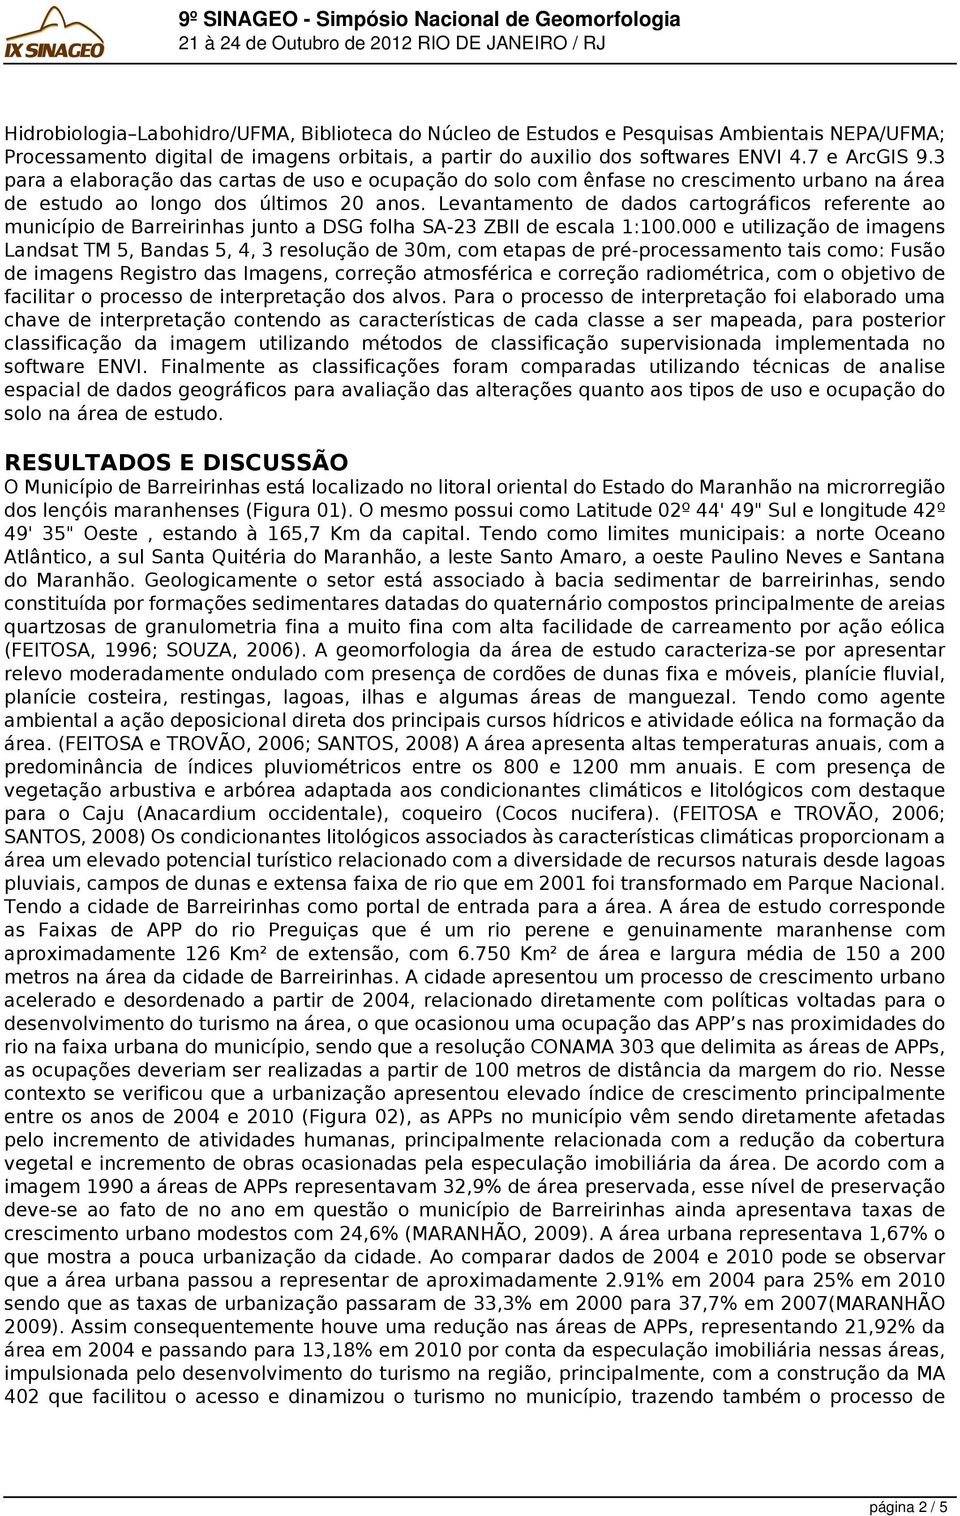 Levantamento de dados cartográficos referente ao município de Barreirinhas junto a DSG folha SA-23 ZBII de escala 1:100.